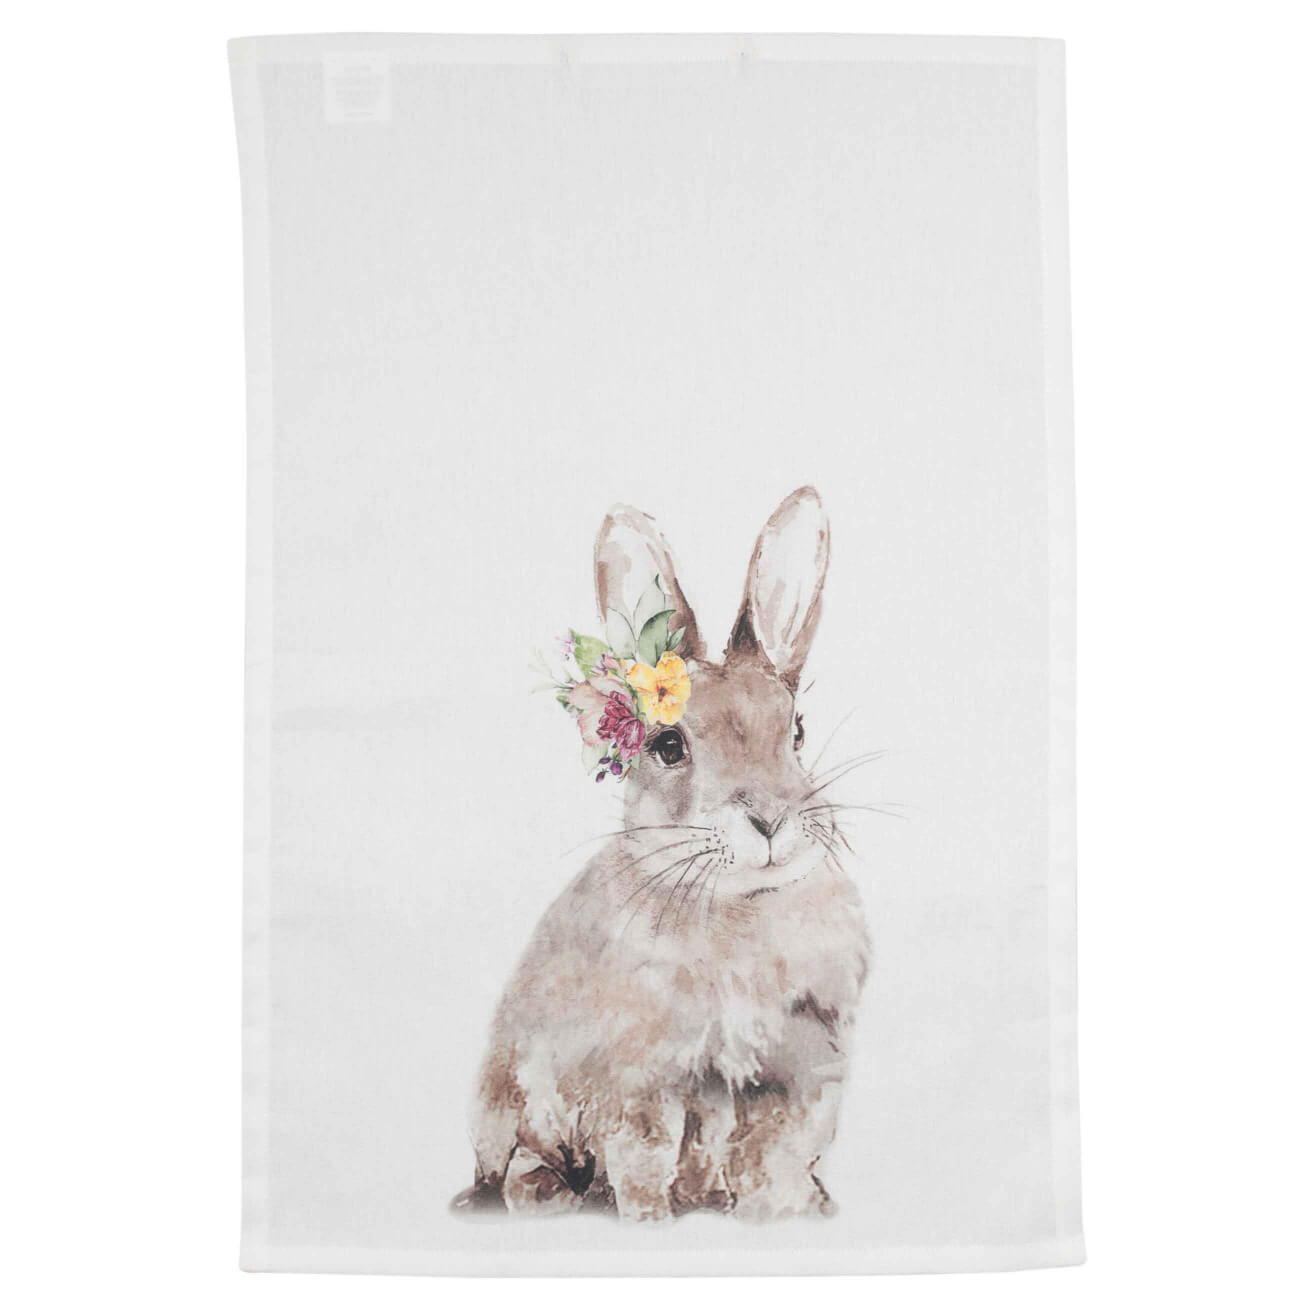 Полотенце кухонное, 40x60 см, хлопок, белое, Кролик, Natural Easter изображение № 1